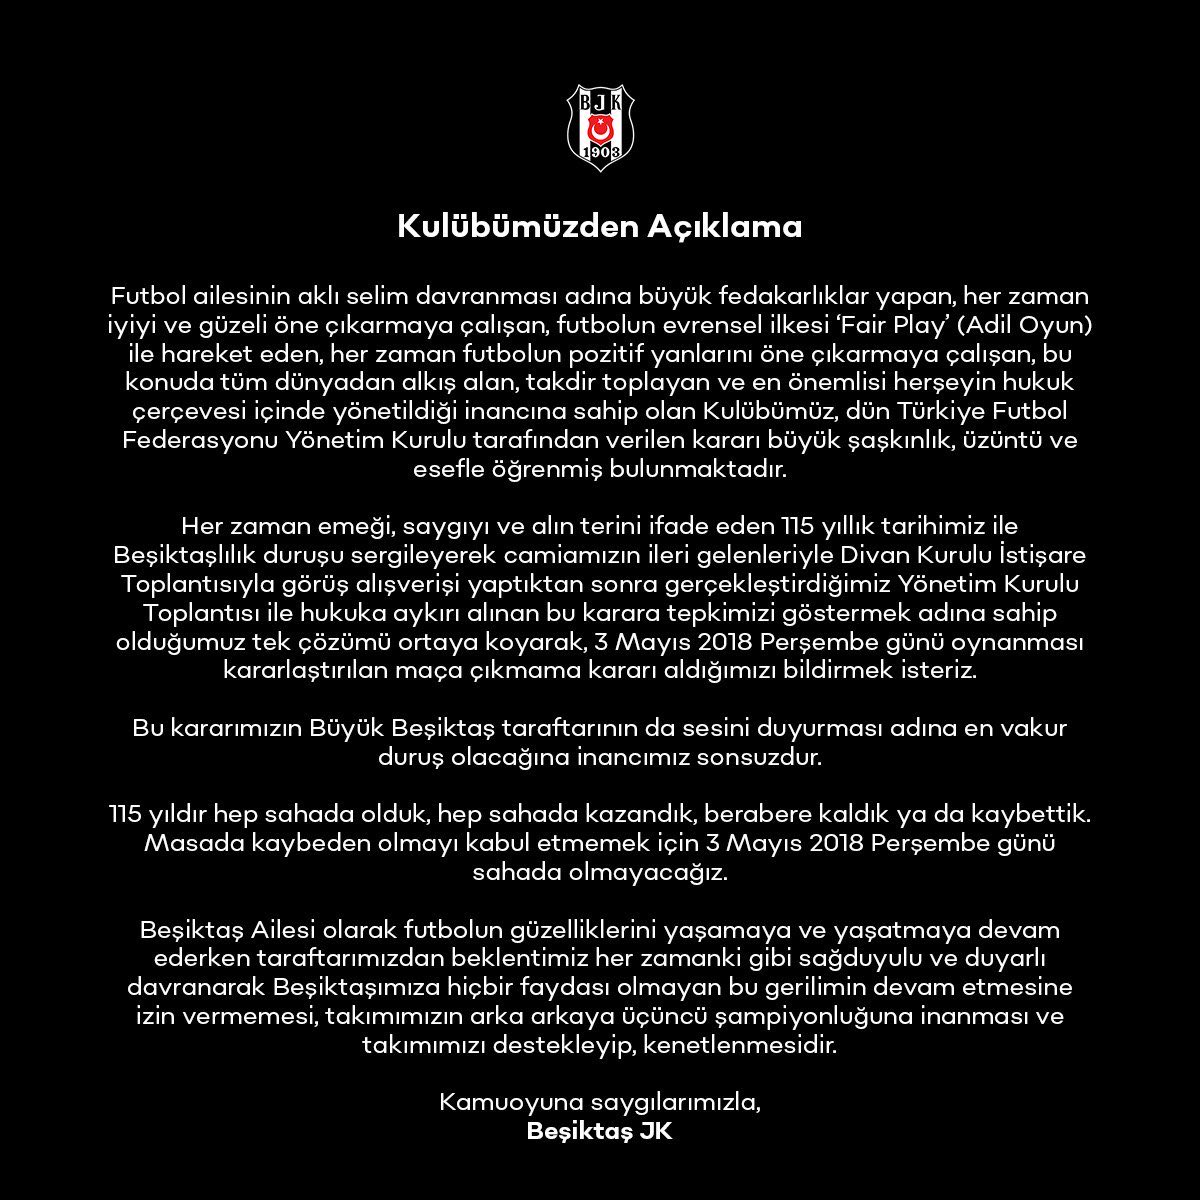 Böyle buyurdu BJK 'Bu kararımızın Büyük Beşiktaş taraftarının da sesini duyurması adına en vakur duruş olacağına inancımız sonsuzdur. 115 yıldır hep sahada olduk, hep sahada kazandık, berabere kaldık ya da kaybettik. Masada kaybeden olmayı kabul etmemek için 3 Mayıs 2018